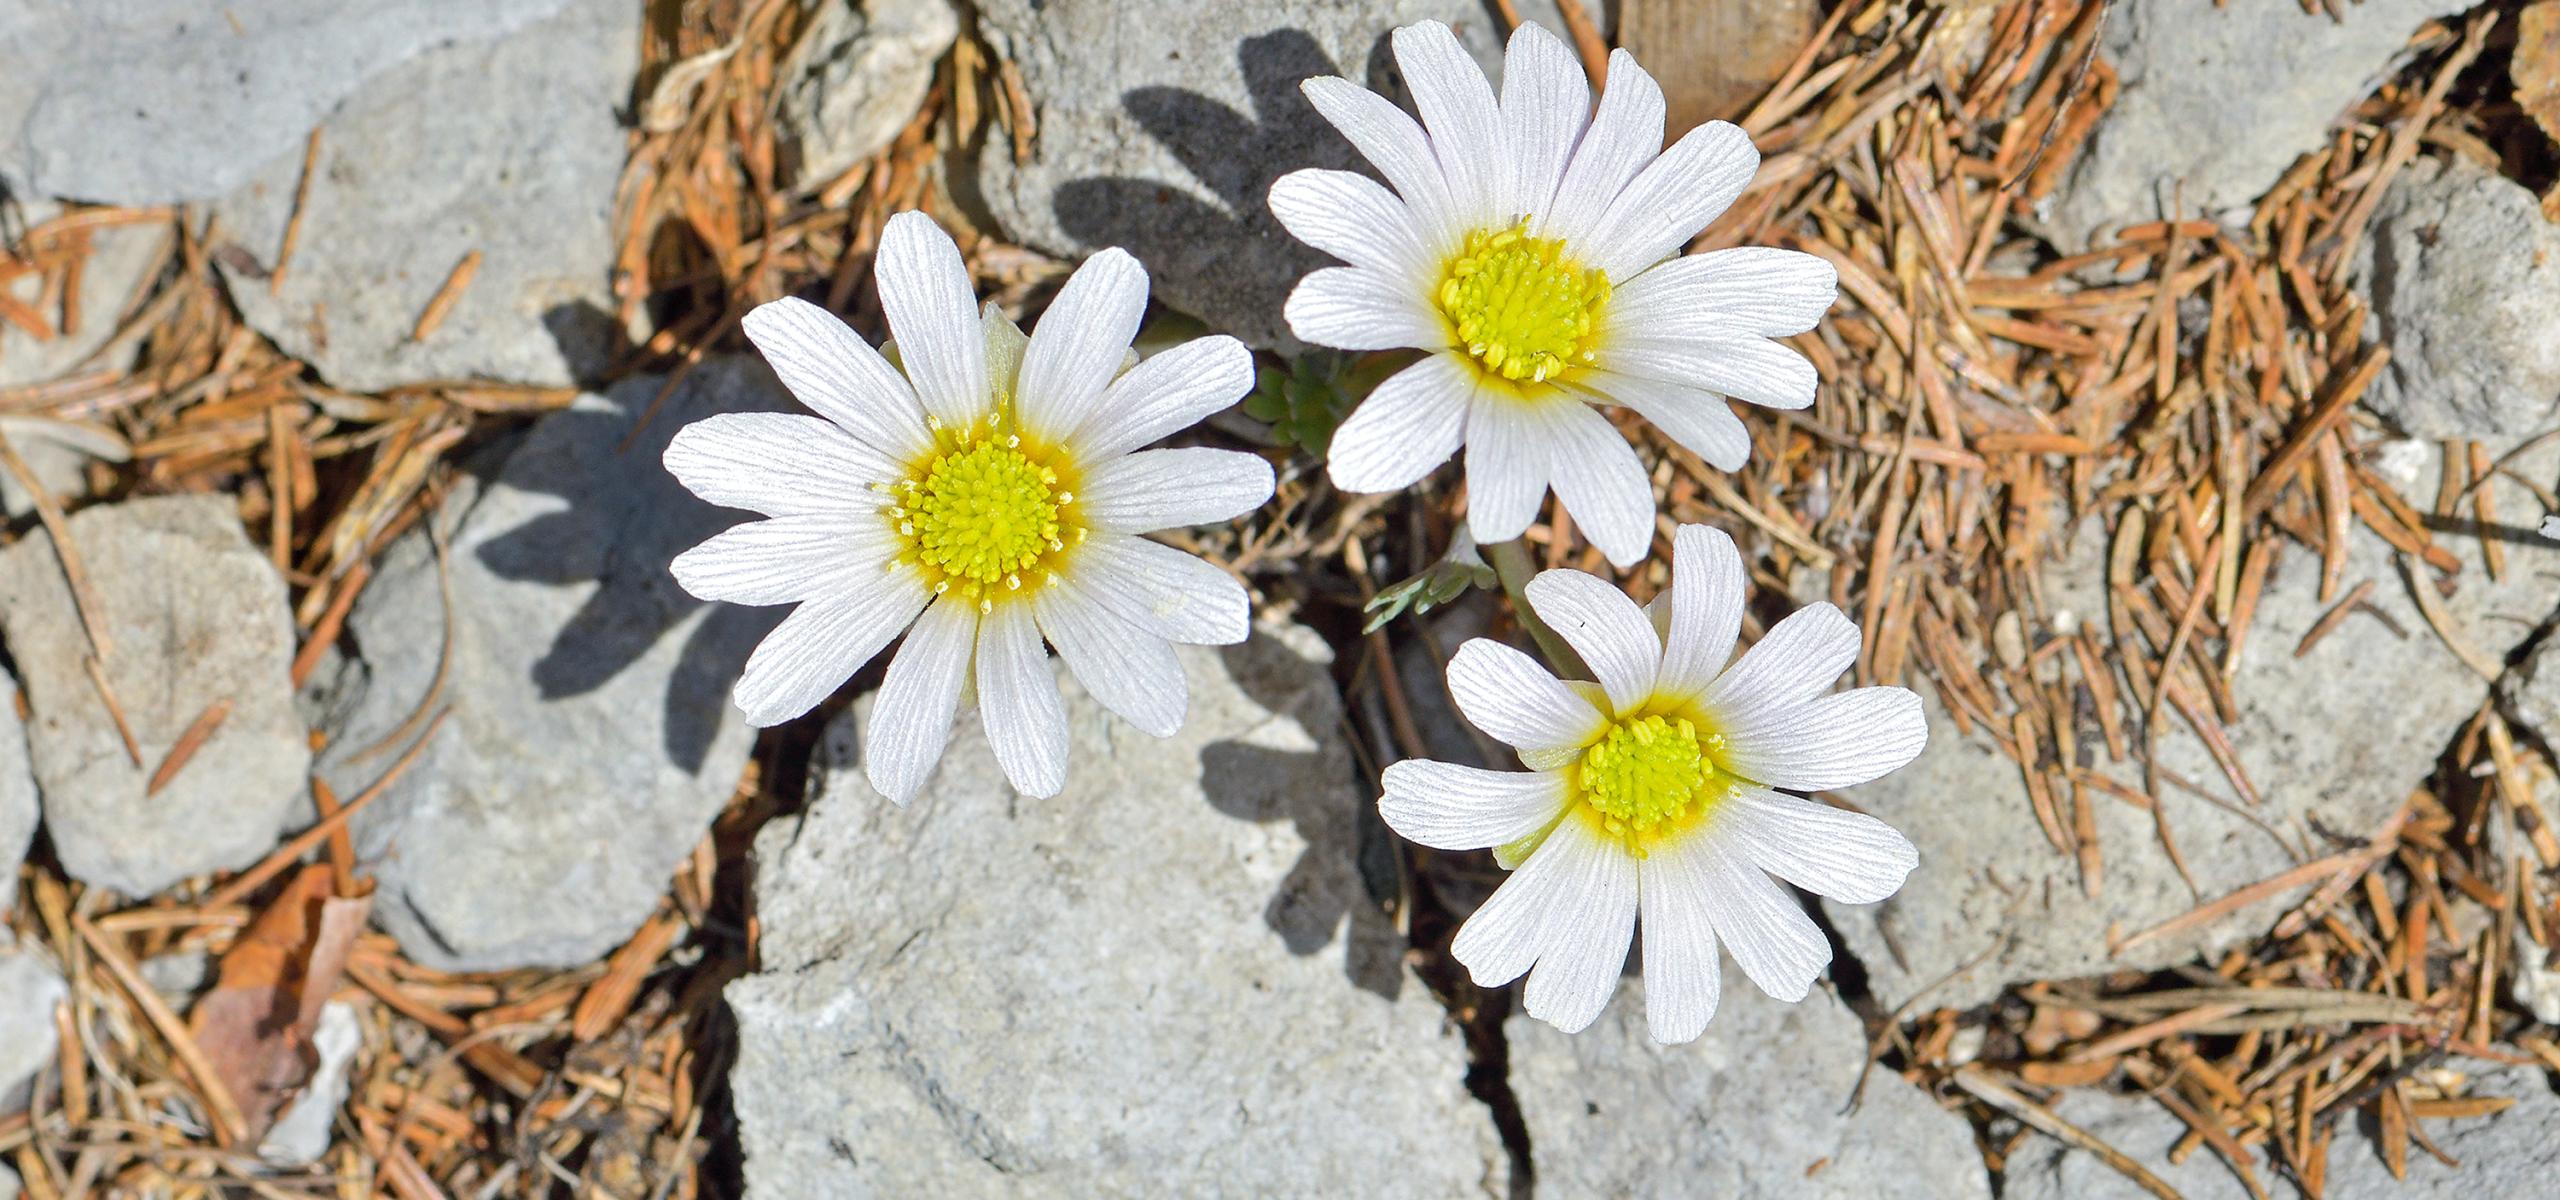 Mezi vápencovými skalami kvetou tři jemné bílé sasanky se žlutým košíčkem.